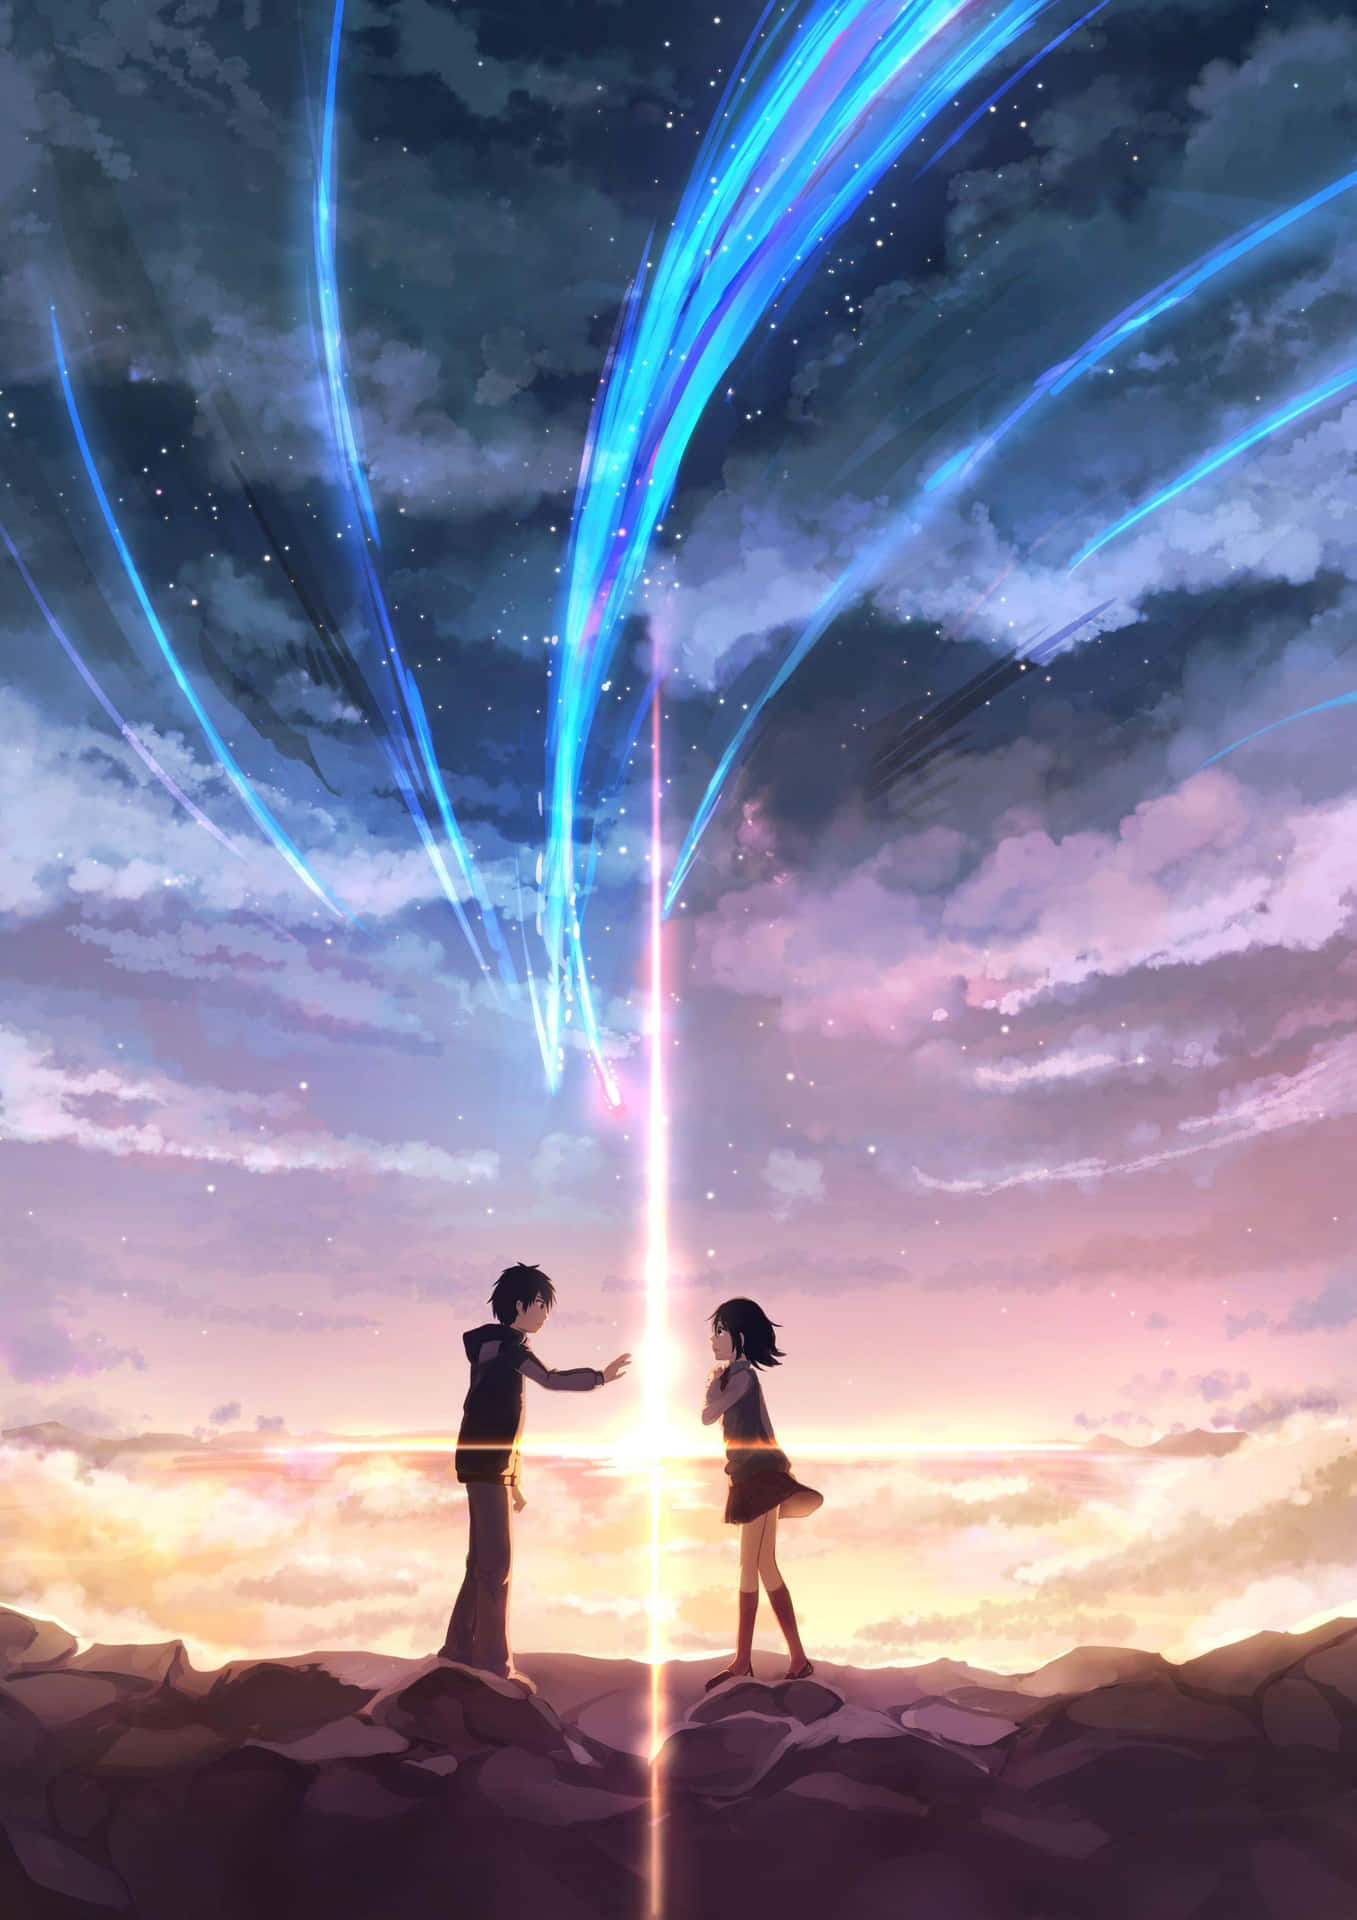 Ettpar Animefigurer Står På En Klippa Med En Stjärna På Himlen